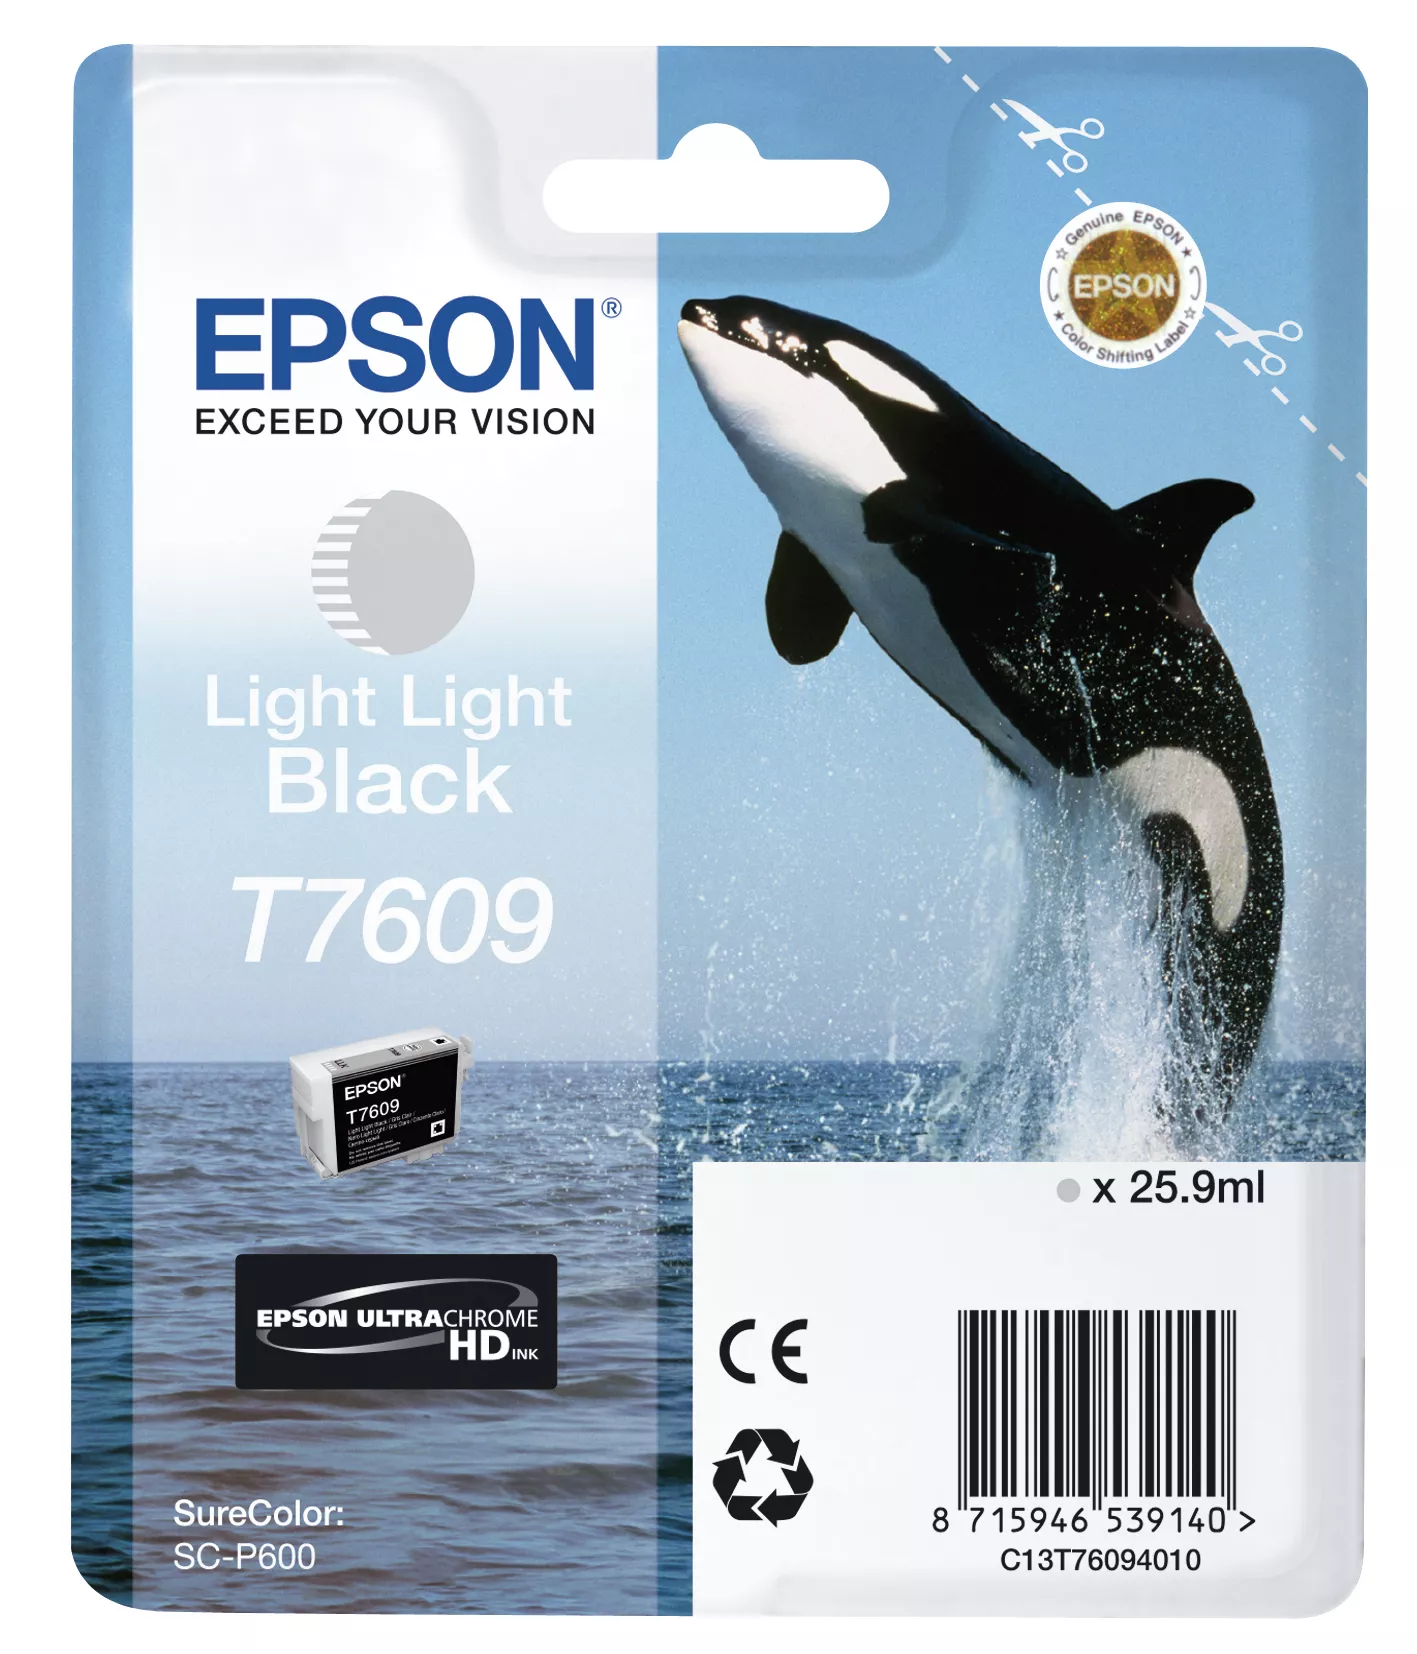 Achat EPSON T7609 cartouche dencre noir clair-clair haute capacité sur hello RSE